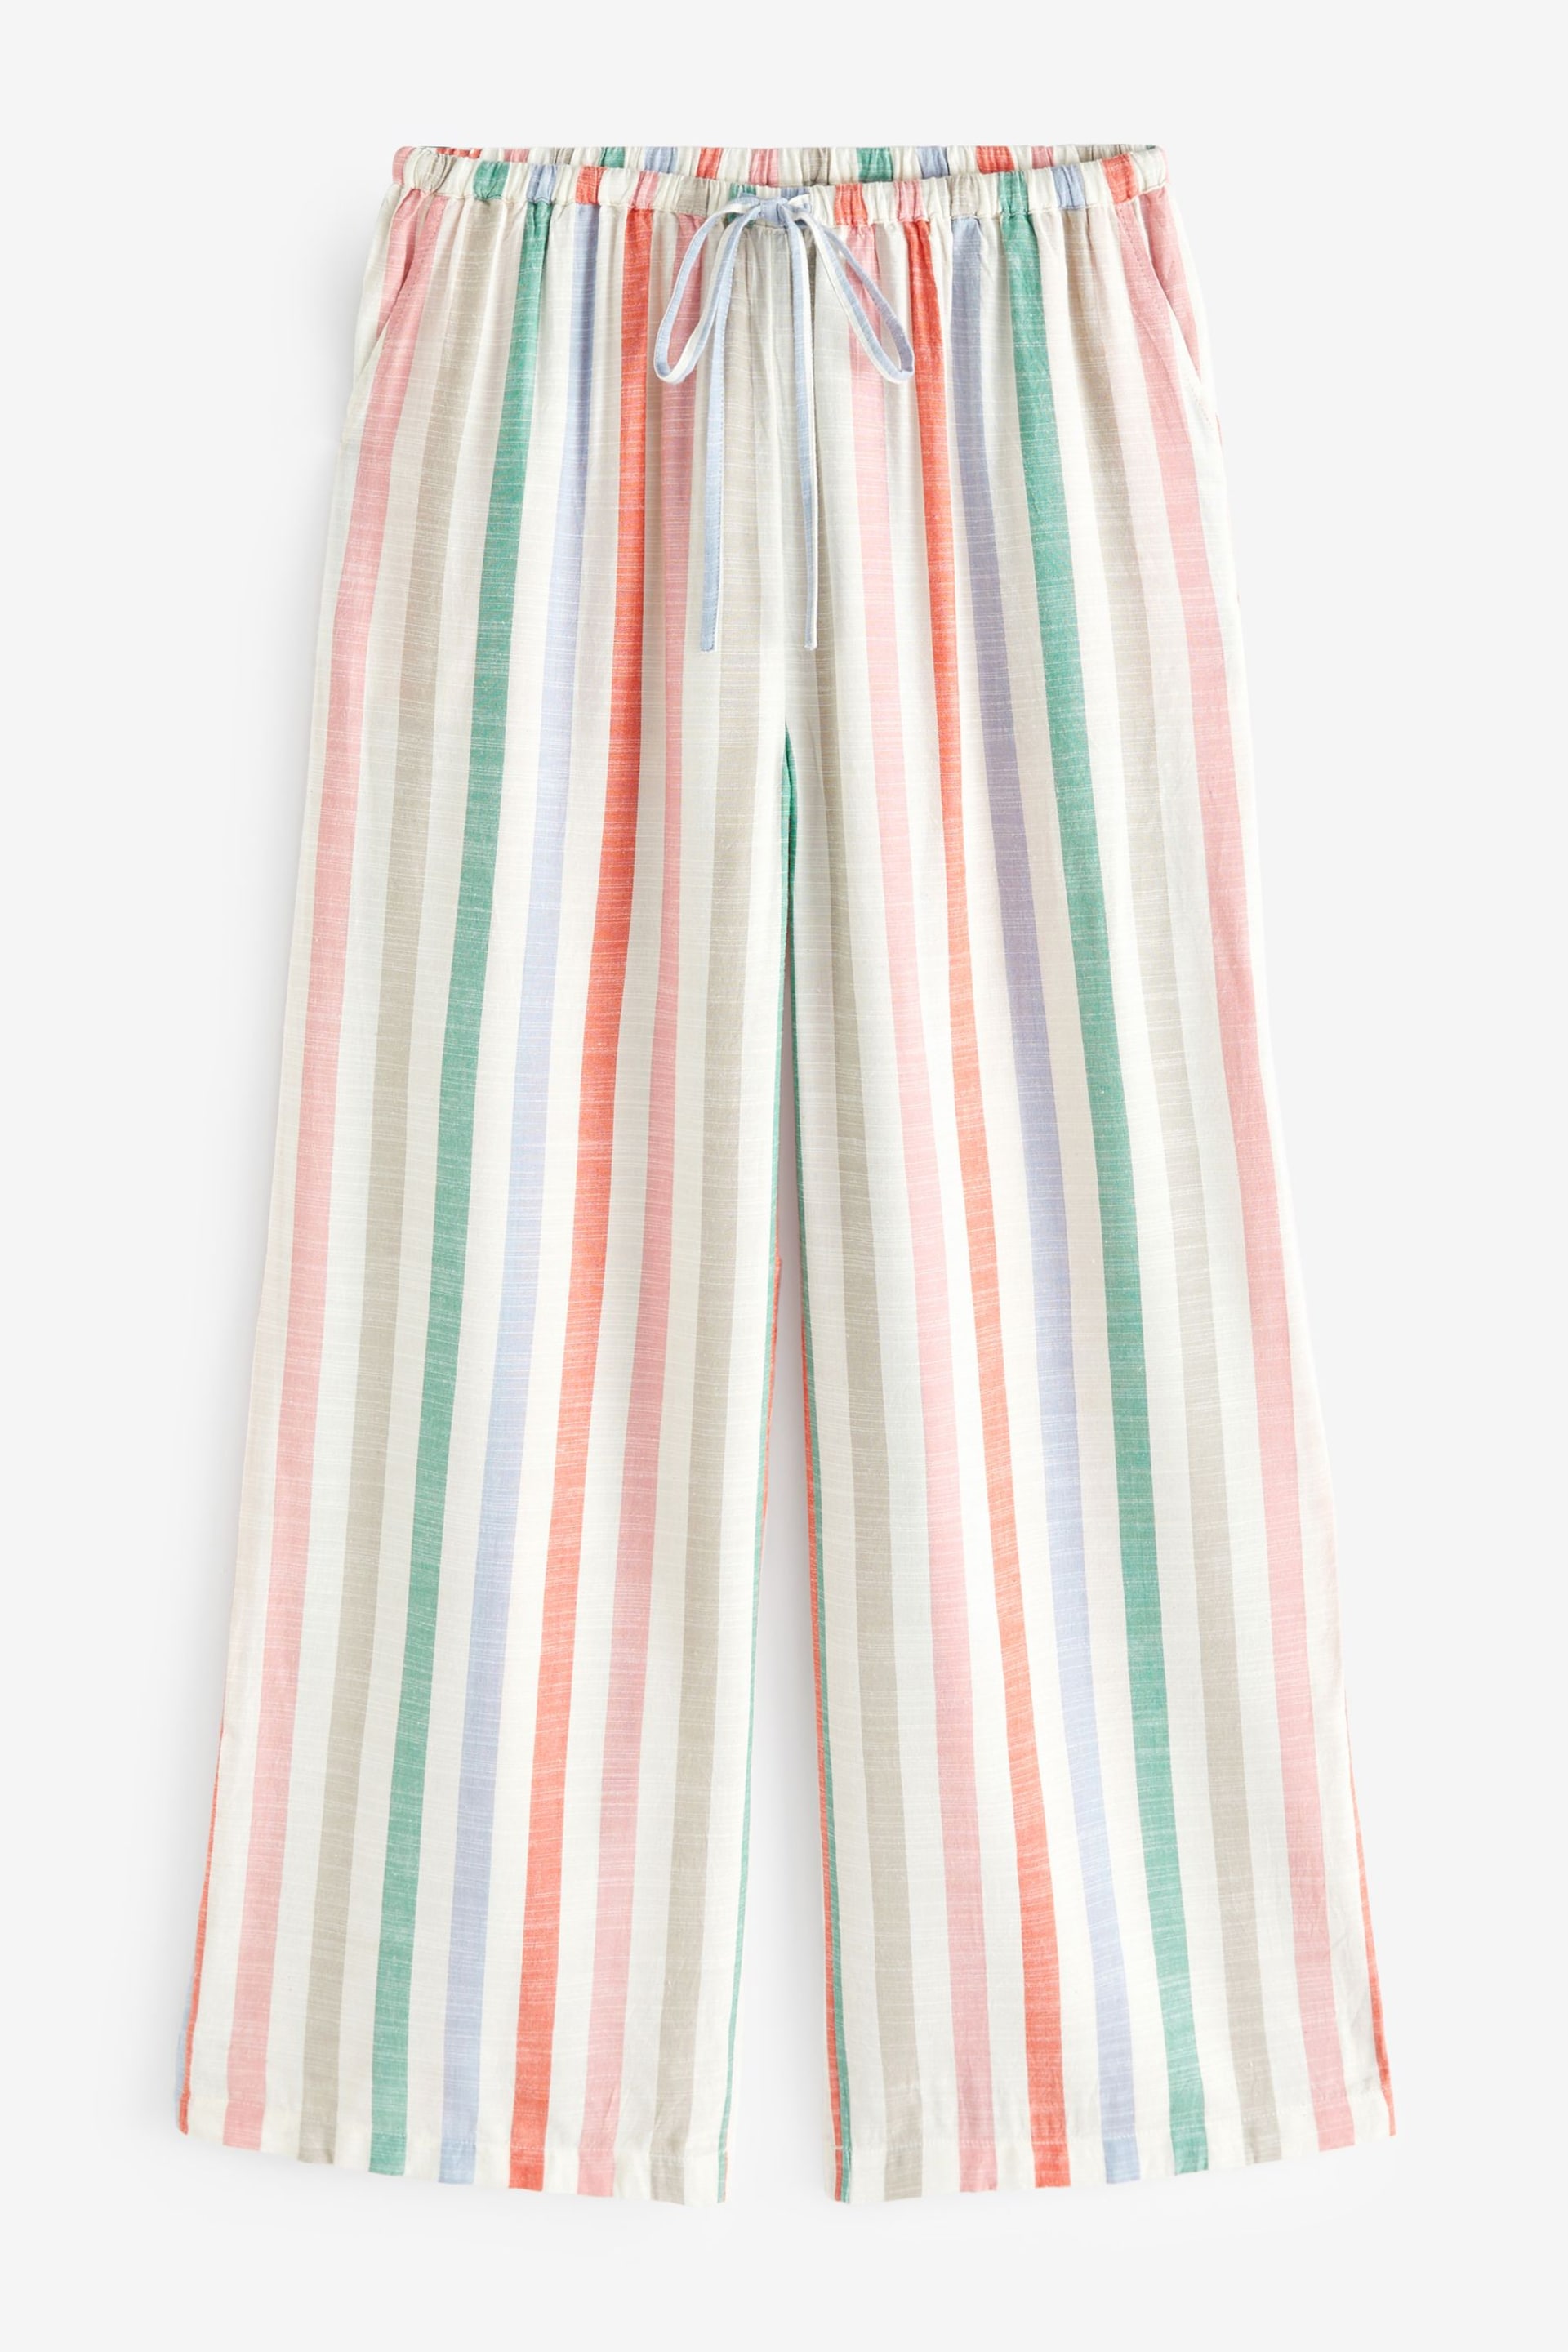 Hush Multi Rudie Stripe Trouser Pyjamas Set - Image 8 of 8